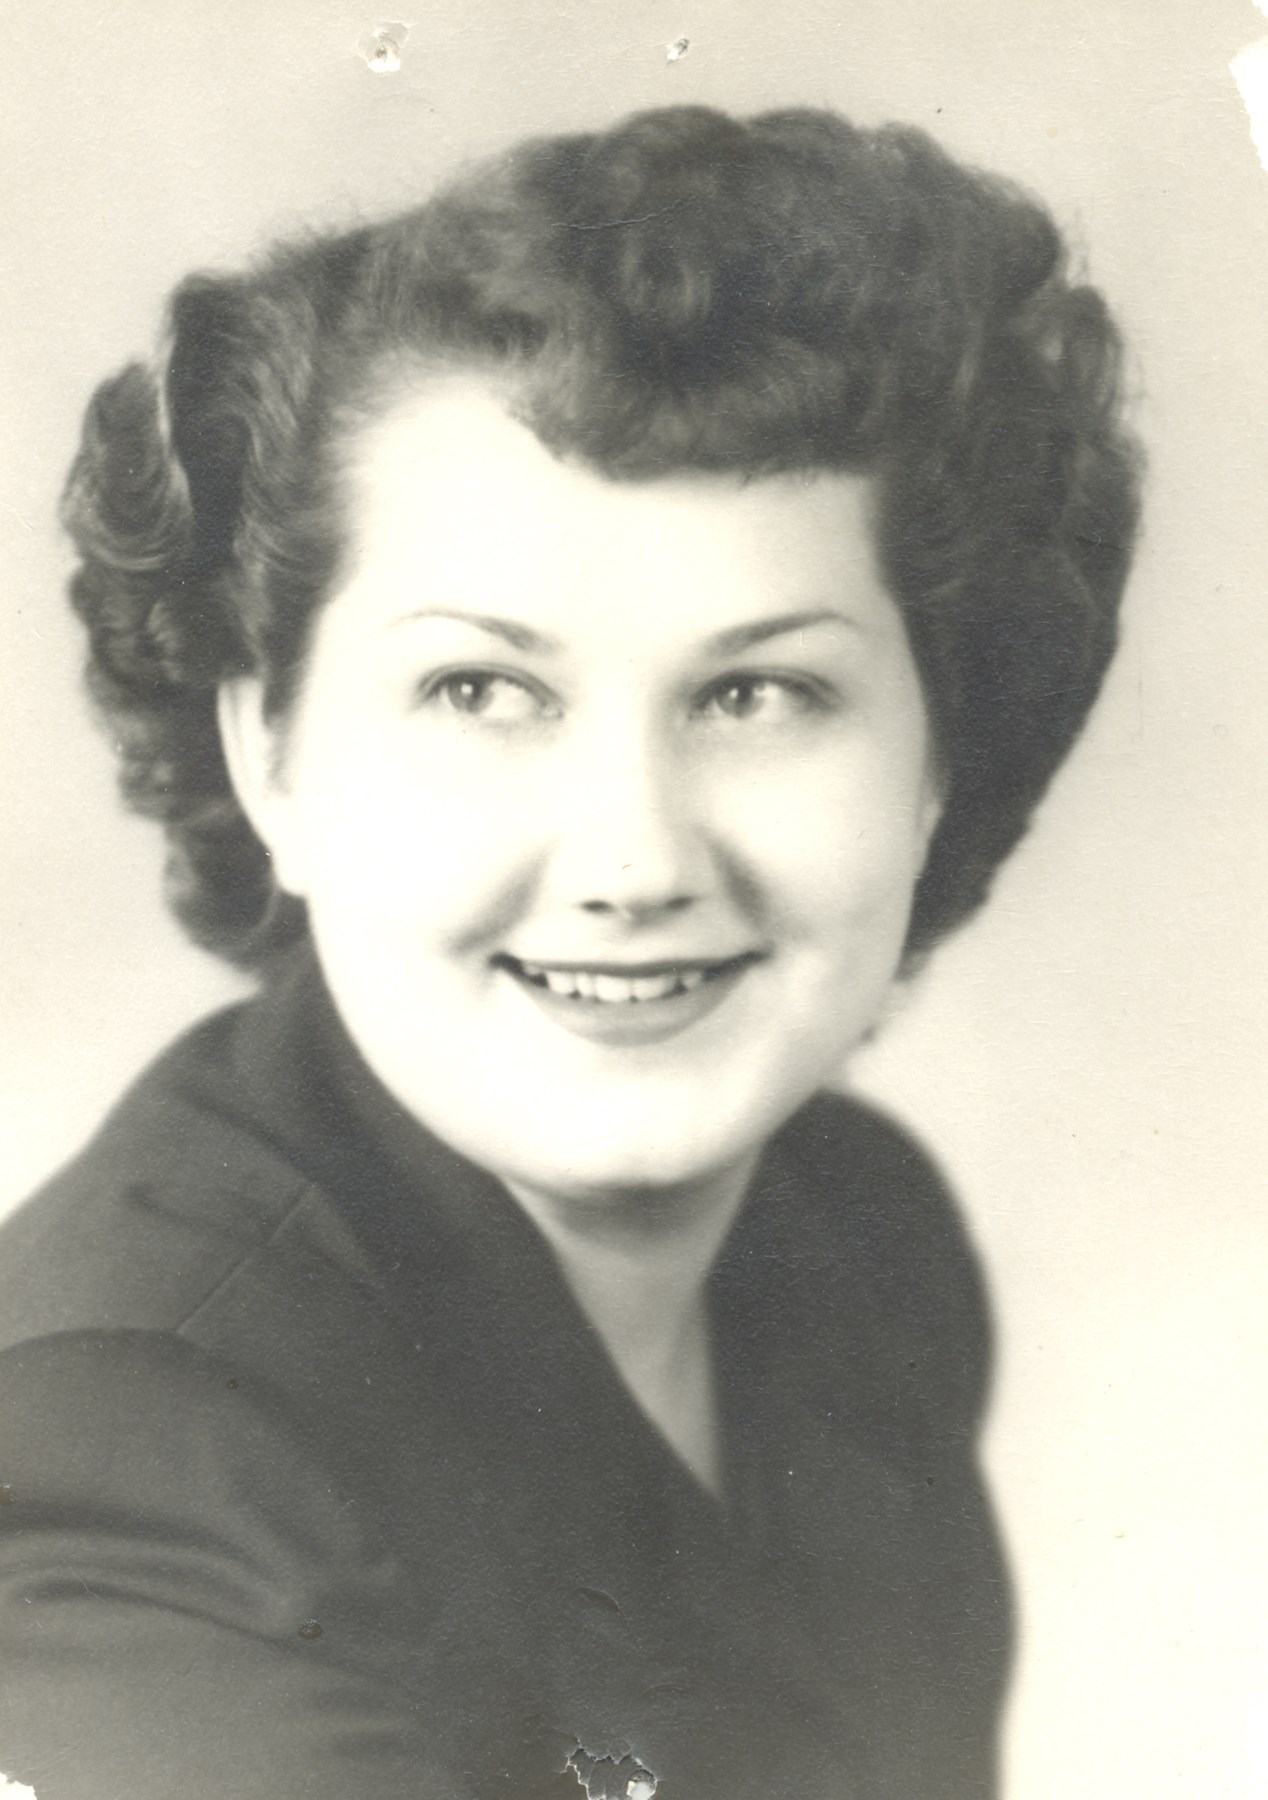 Betty Gray Obituary